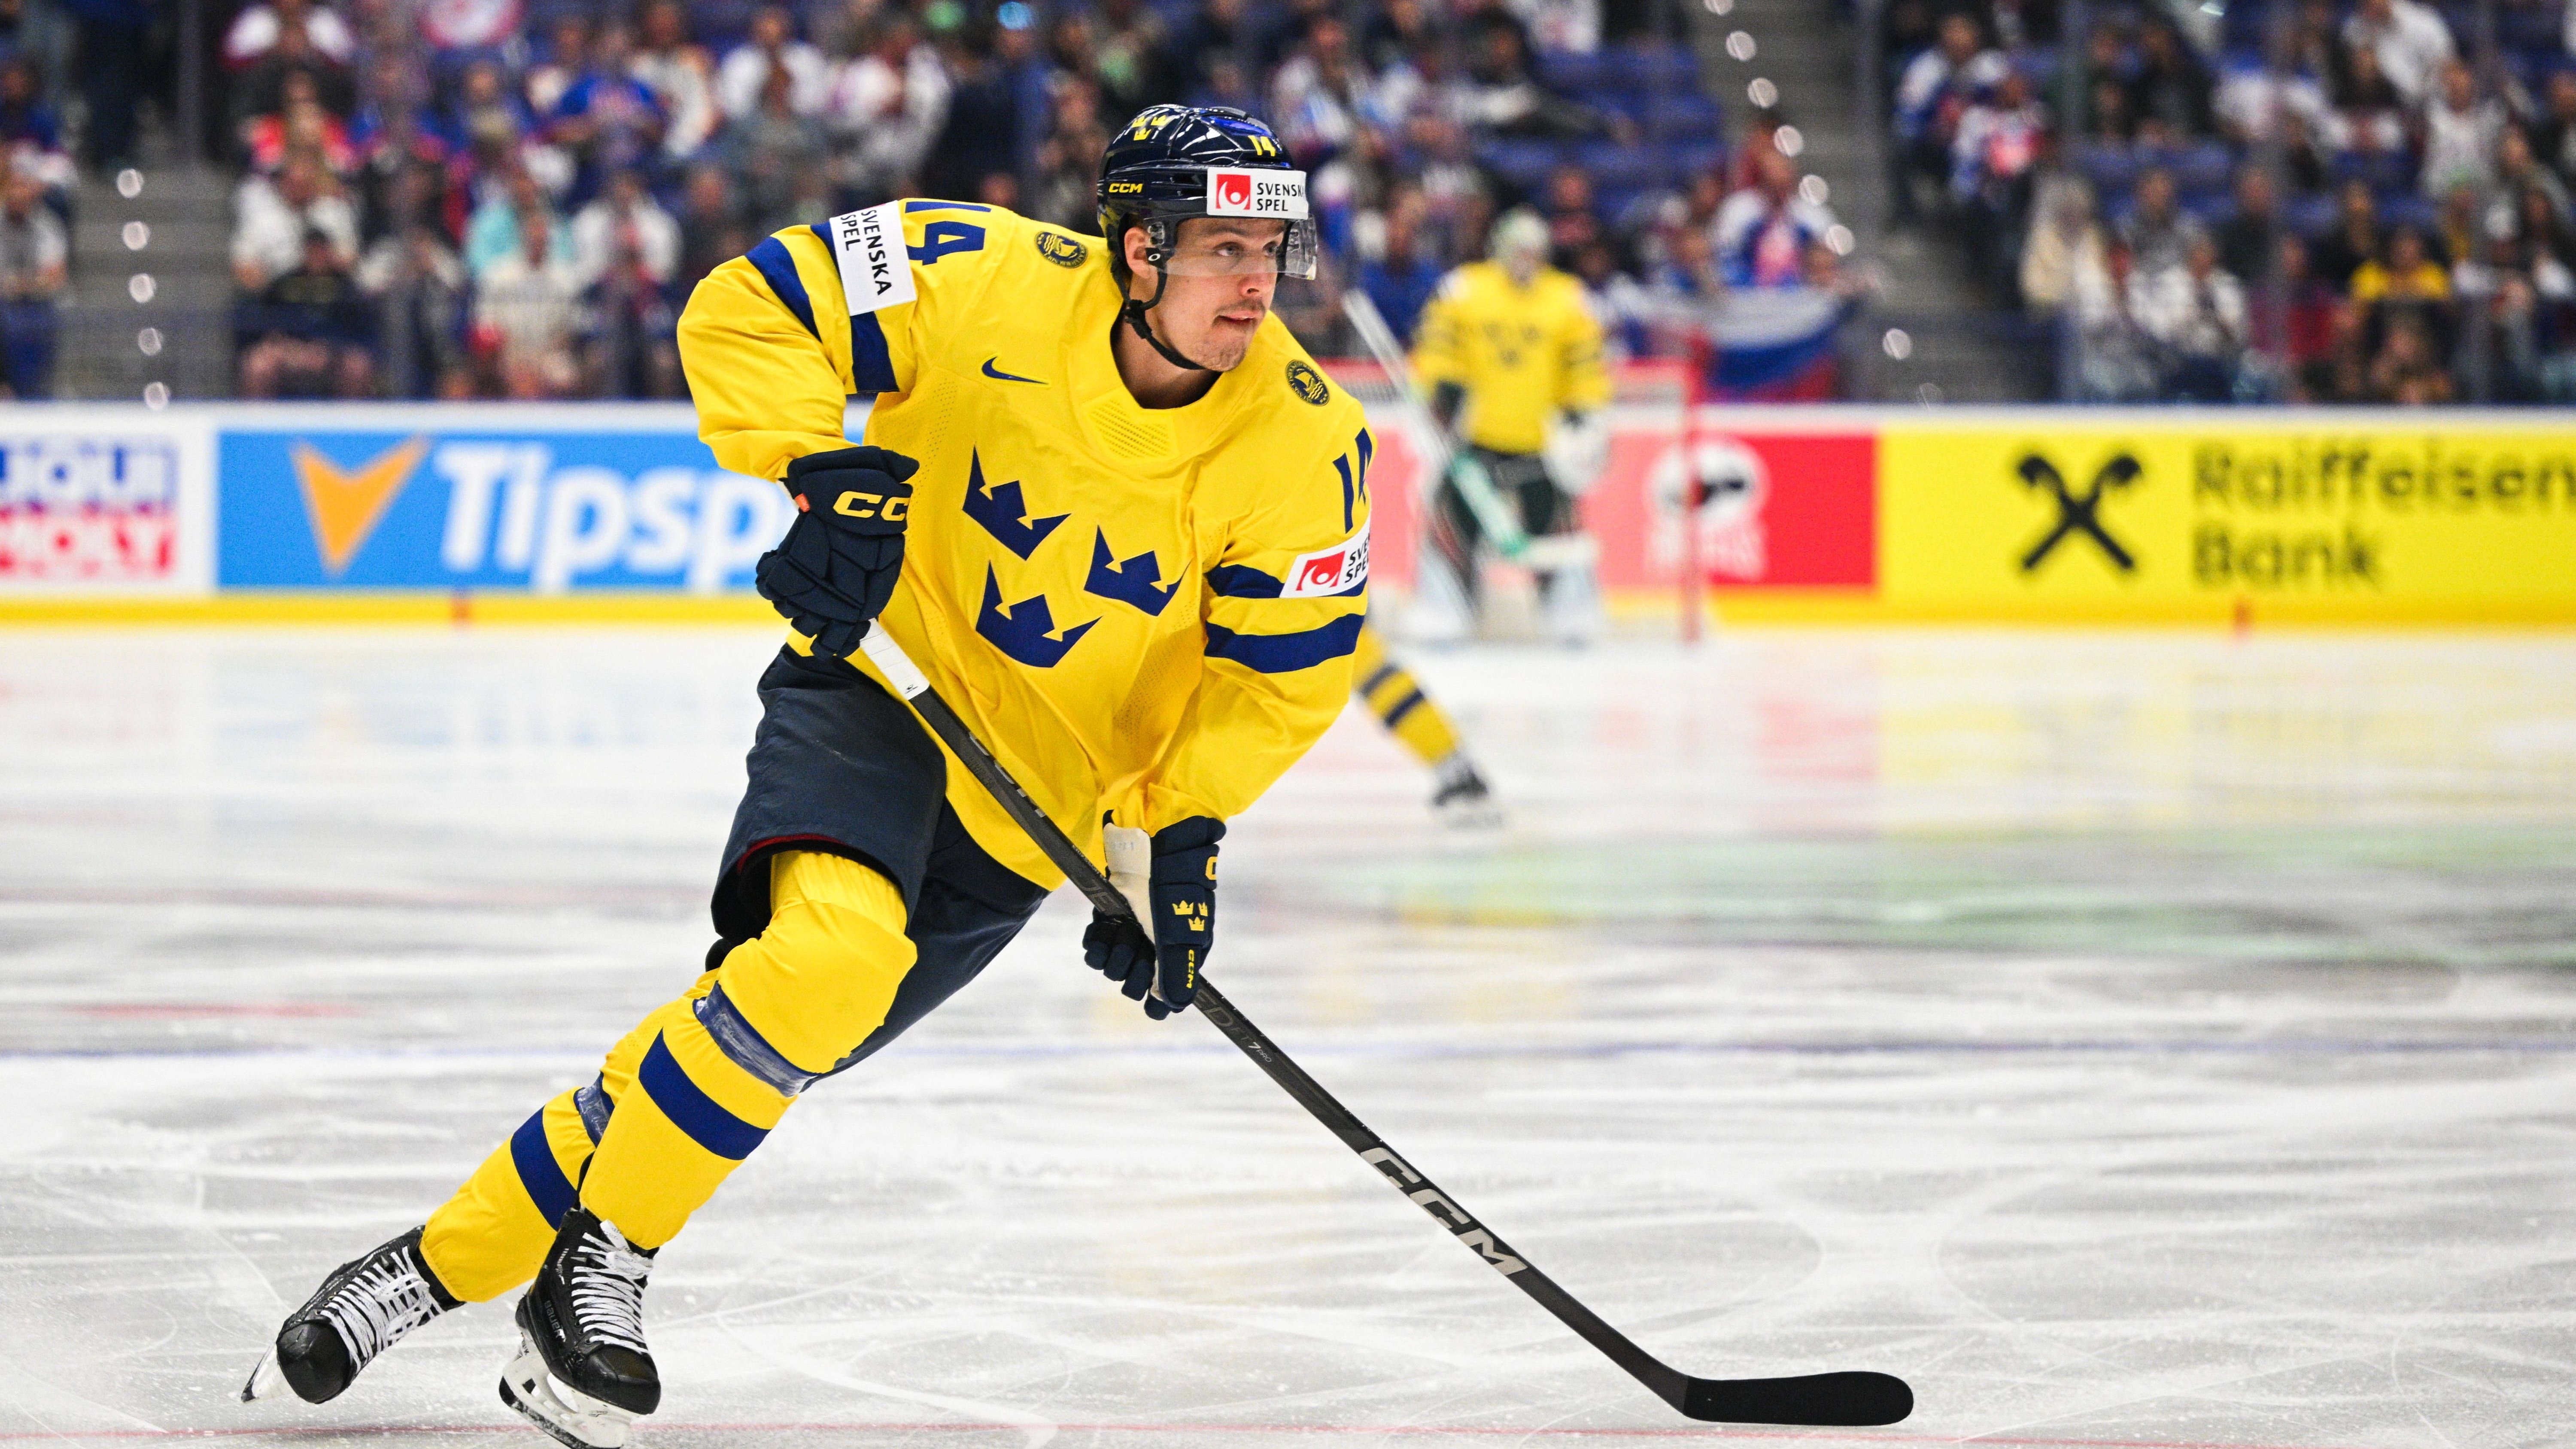 <strong>Schweden: Joel Eriksson Ek (Minnesota Wild)</strong><br>Der Mittelstürmer kann auf mehr als 500 Spiele NHL-Erfahrung zurückblicken. In Minnesota ist er eine feste Größe im Team und erzielte in den vergangenen beiden Regular Season jeweils über 60 Scorer-Punkte. Die Tre Kronor repräsentierte der 27-Jährige zuletzt bei der WM in Deutschland 2017 - als Schweden Weltmeister wurde.